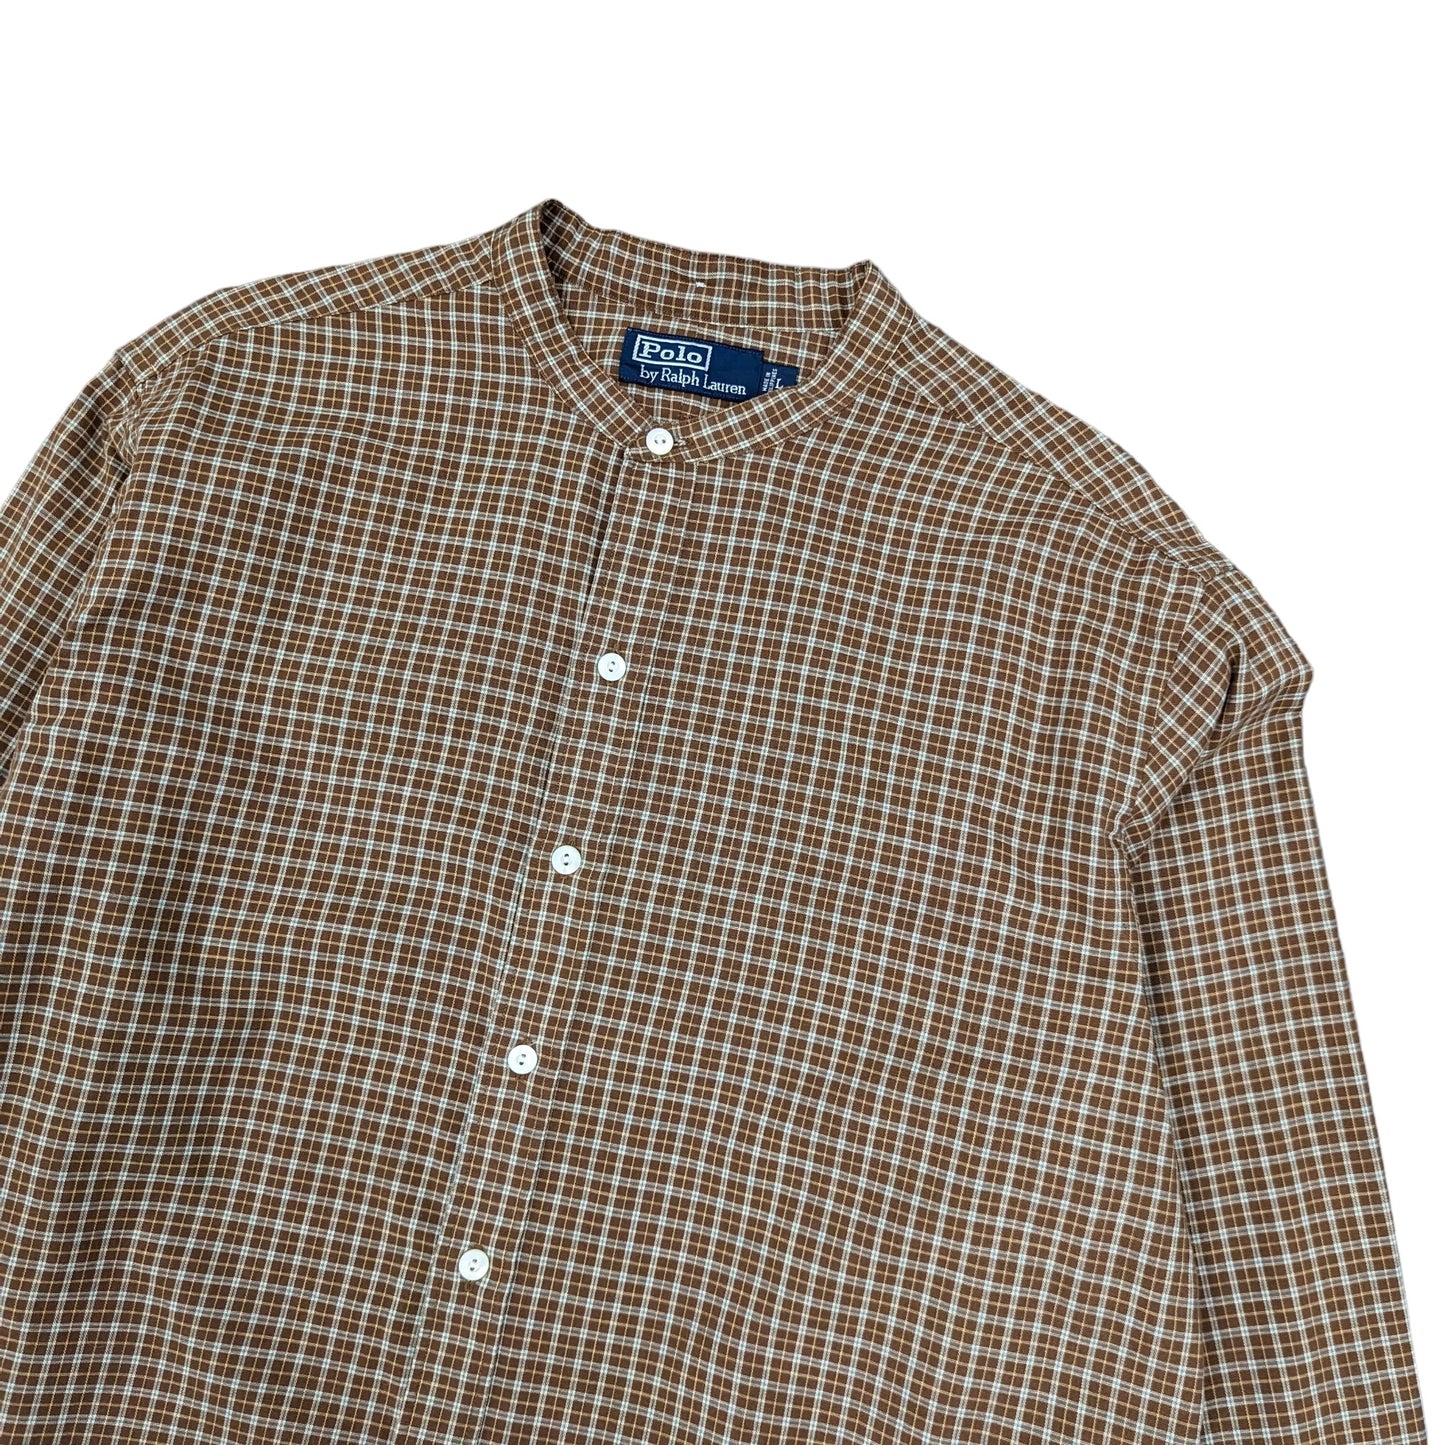 Ralph Lauren Grandad Collar Check Shirt Size L